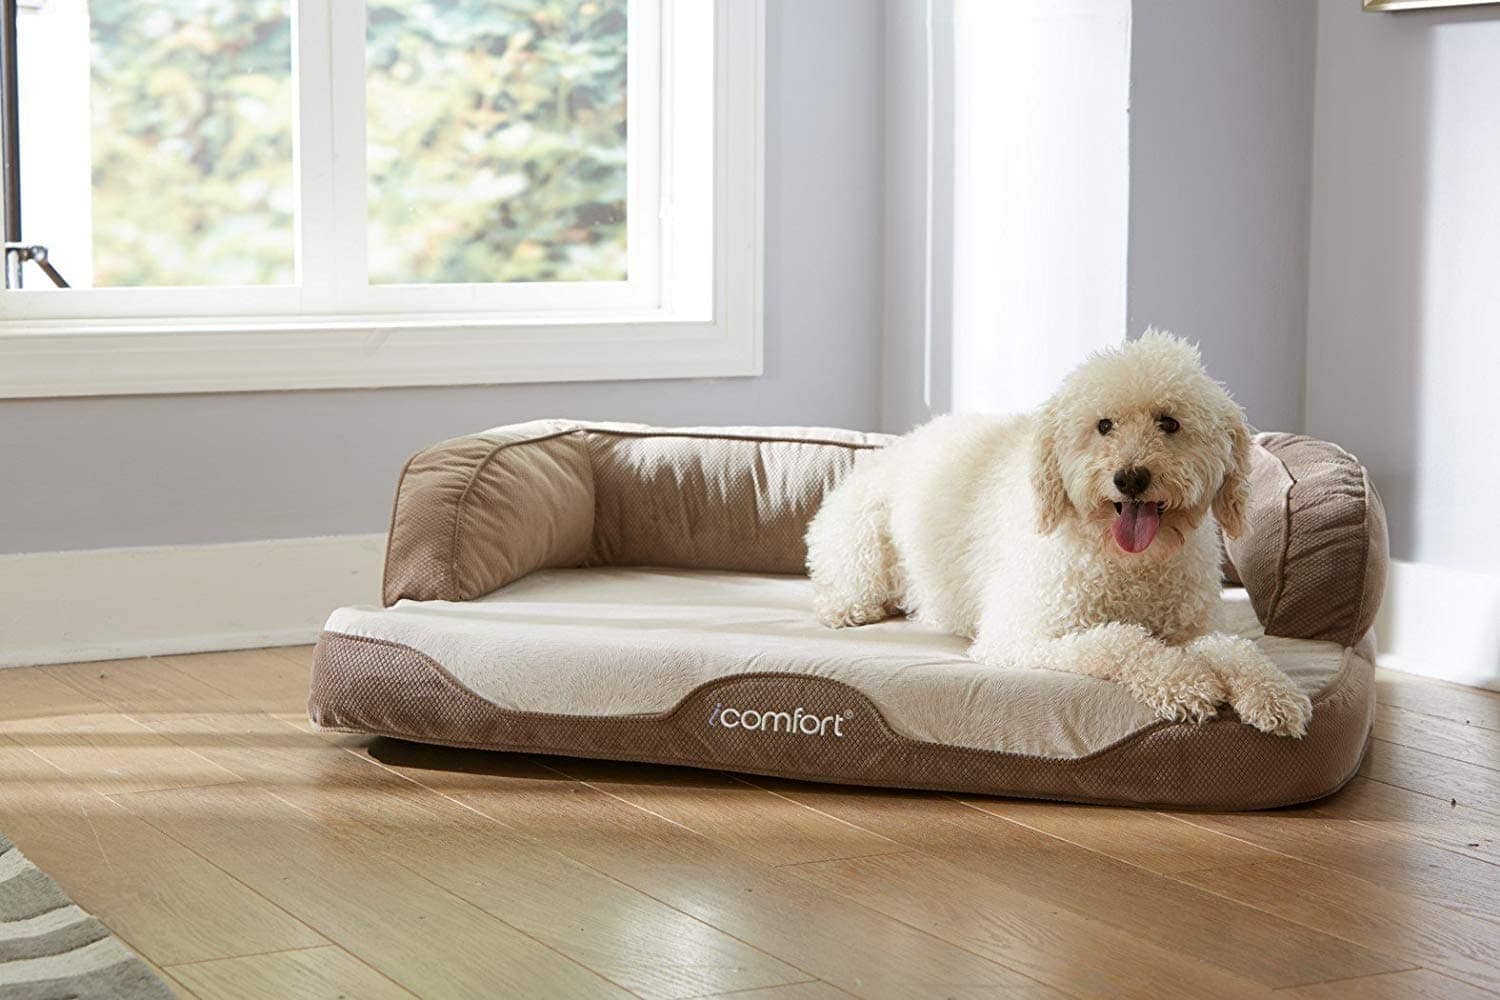 Best Dog Cooling Bed